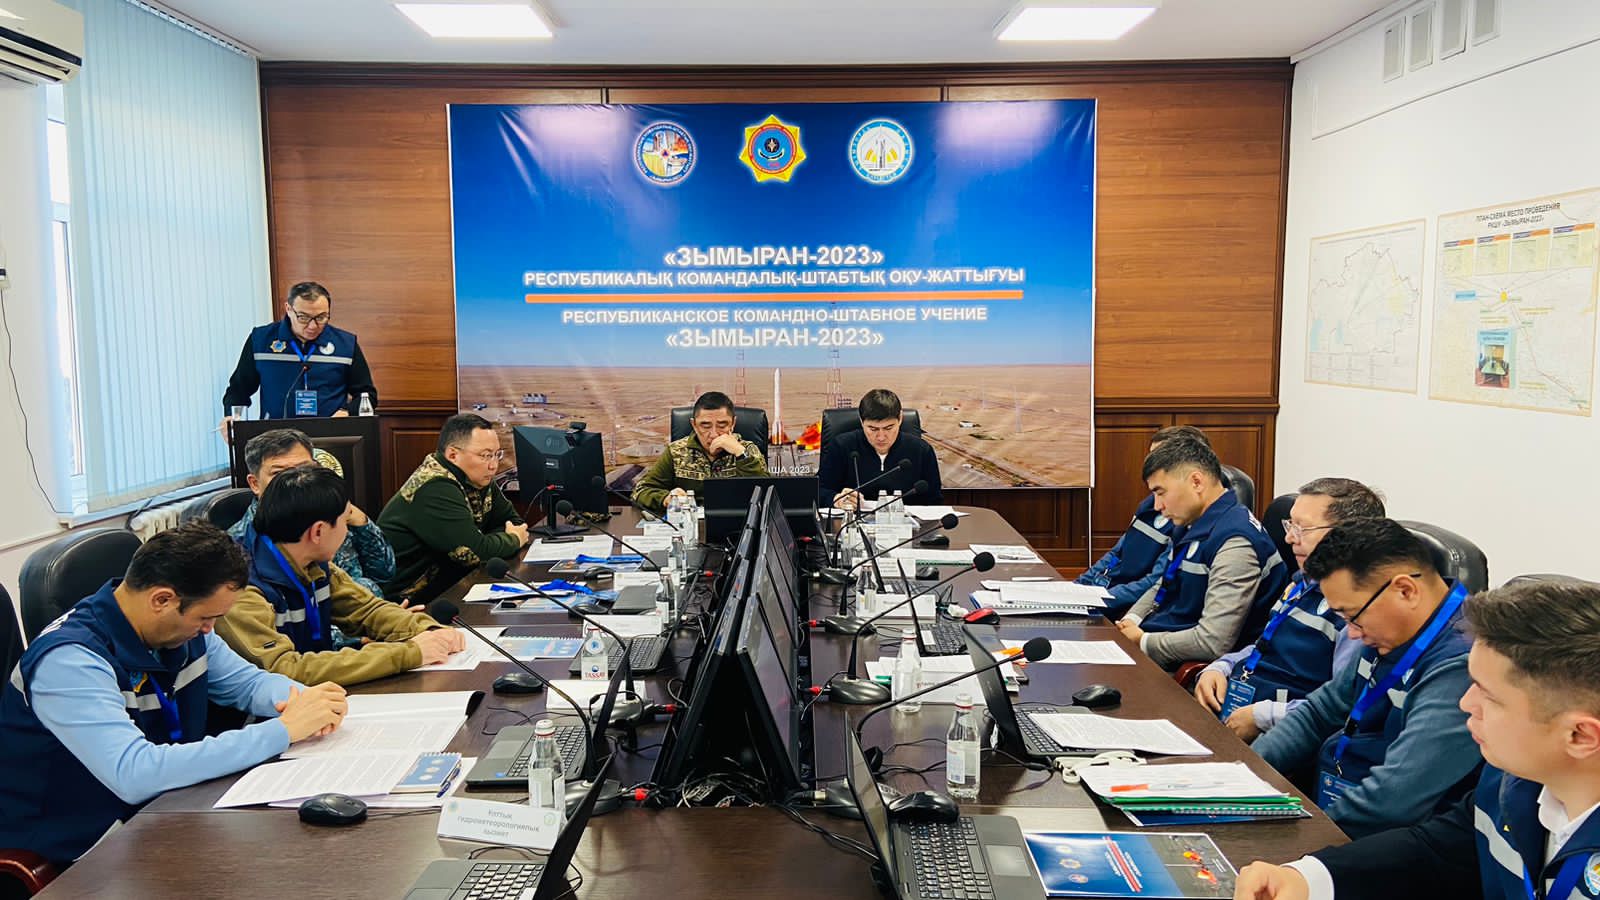 В стране стартовало Республиканское командно-штабное учение «Зымыран-2023»